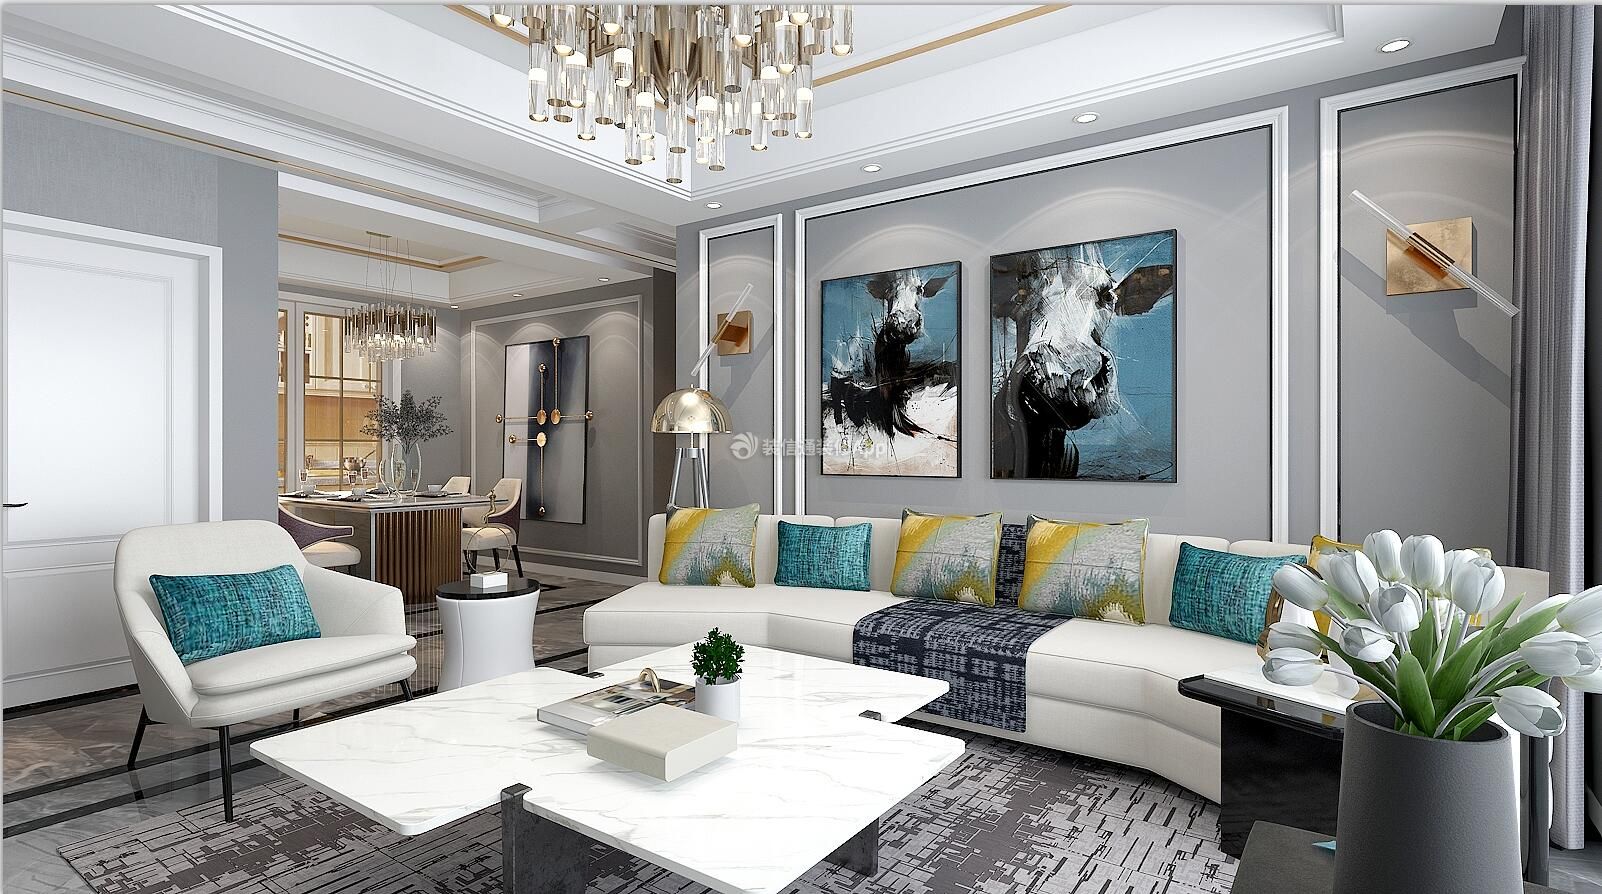  2020创意茶几设计 创意茶几图片 2020客厅白色沙发效果图